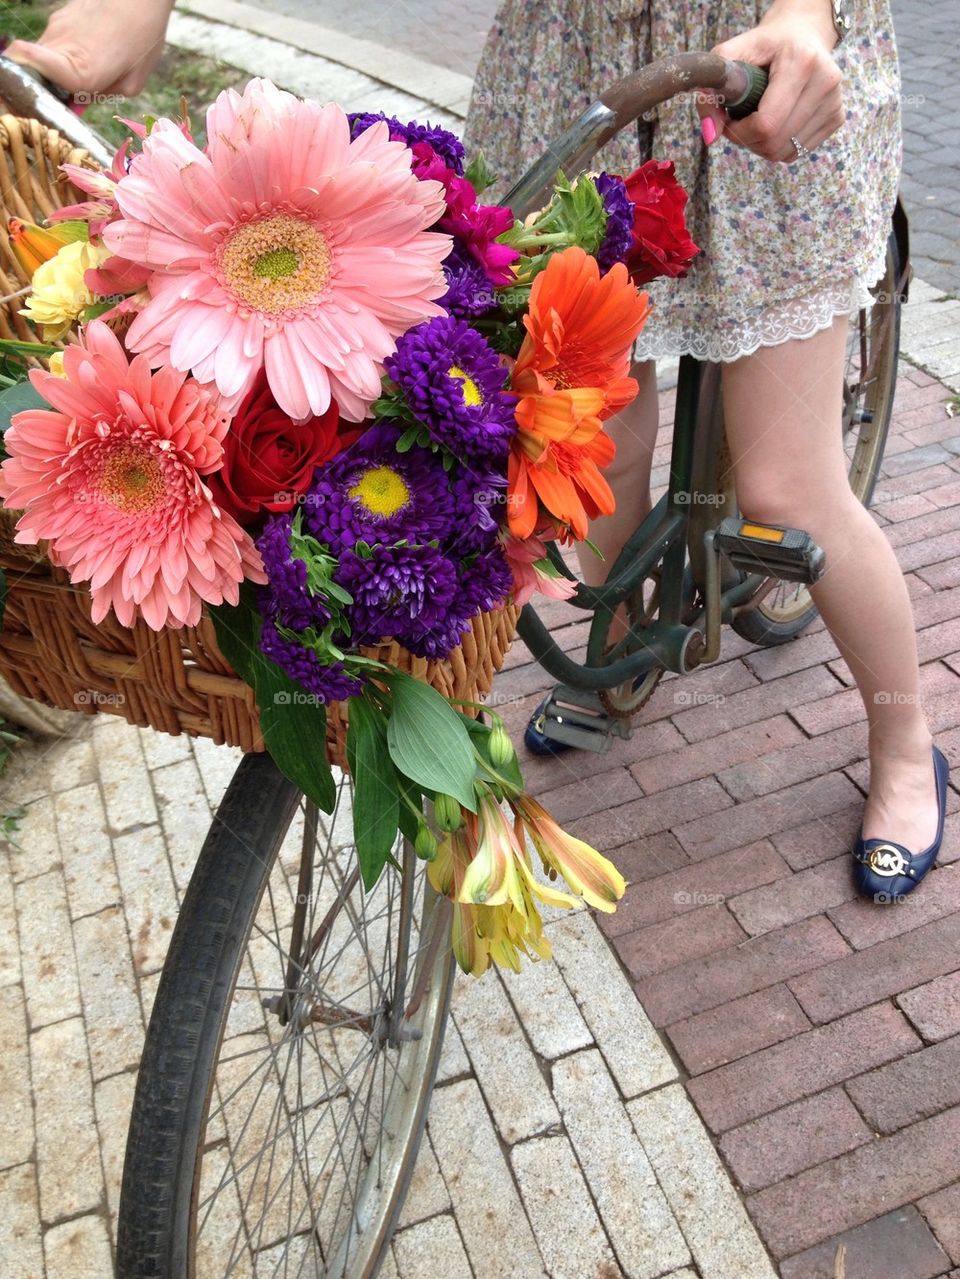 Girl on vintage schwinns bicycle and basket of flowers